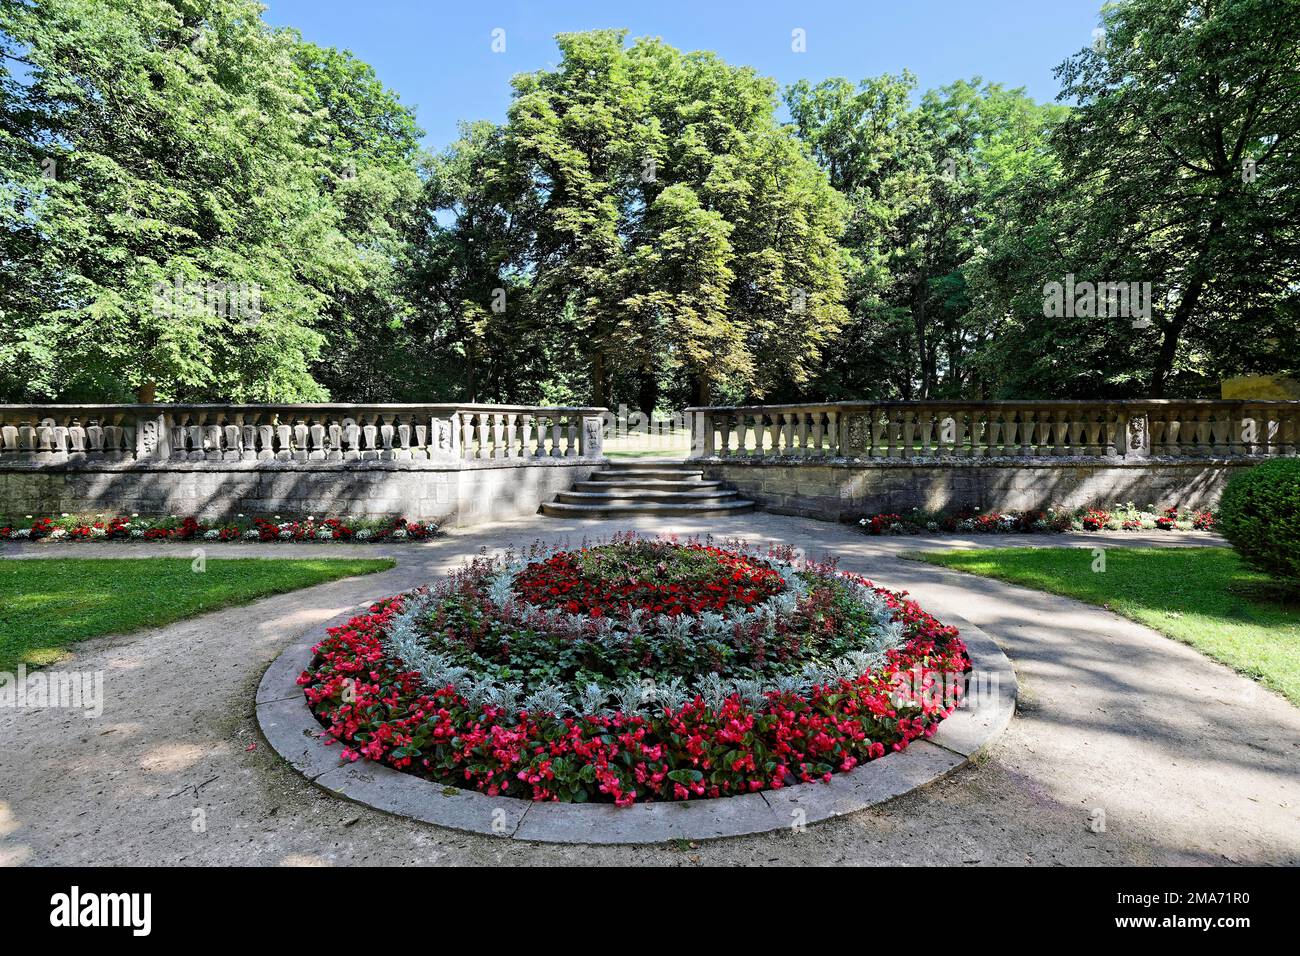 Cama redonda con flores, detrás de ballustrade con escaleras, árboles viejos altos, parque del castillo, residencia Ellingen, construido 1708-1760, castillo, Orden Teutónica Foto de stock